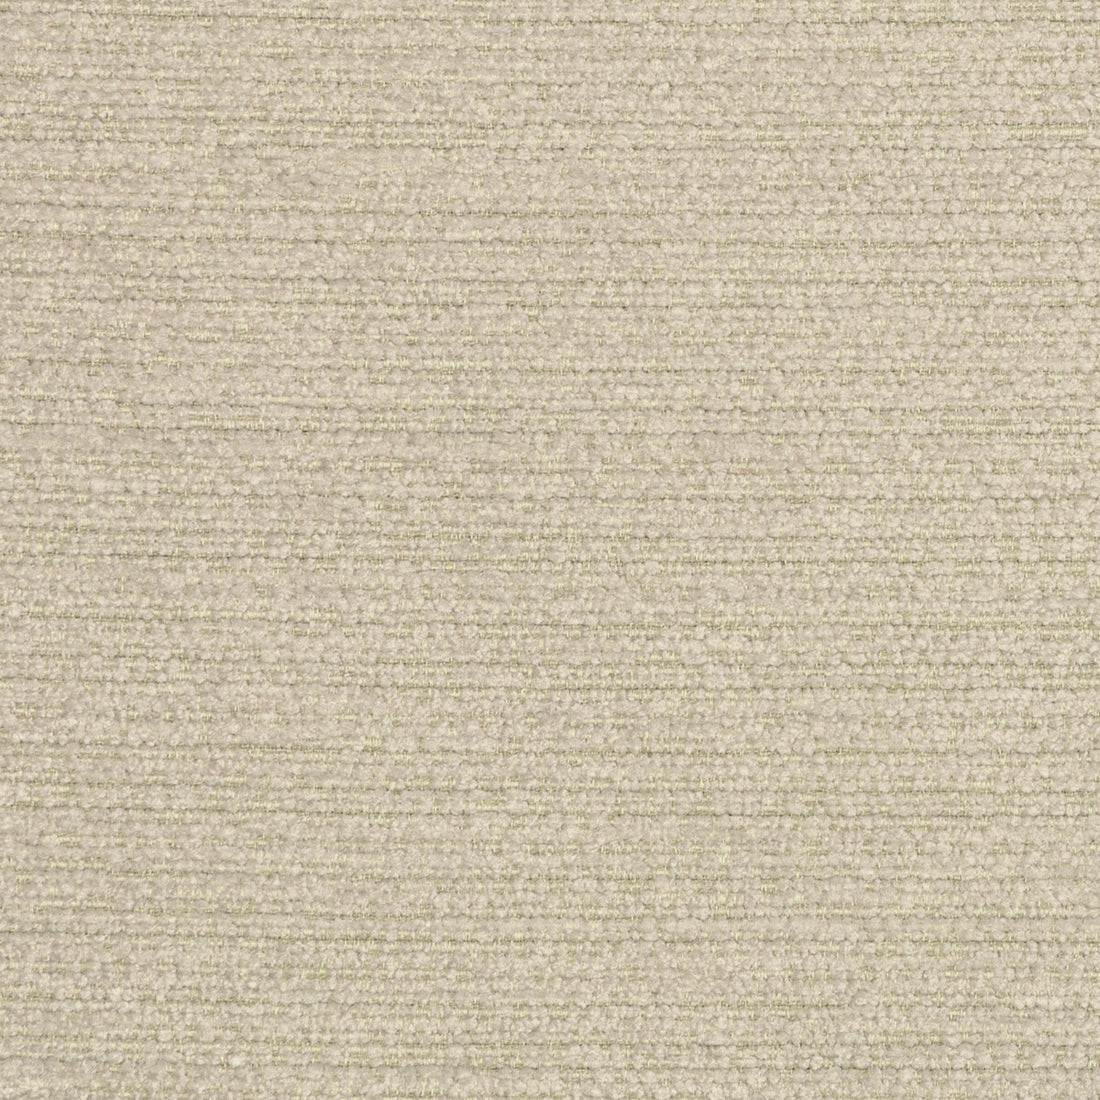 Kravet Design fabric in 36121-16 color - pattern 36121.16.0 - by Kravet Design